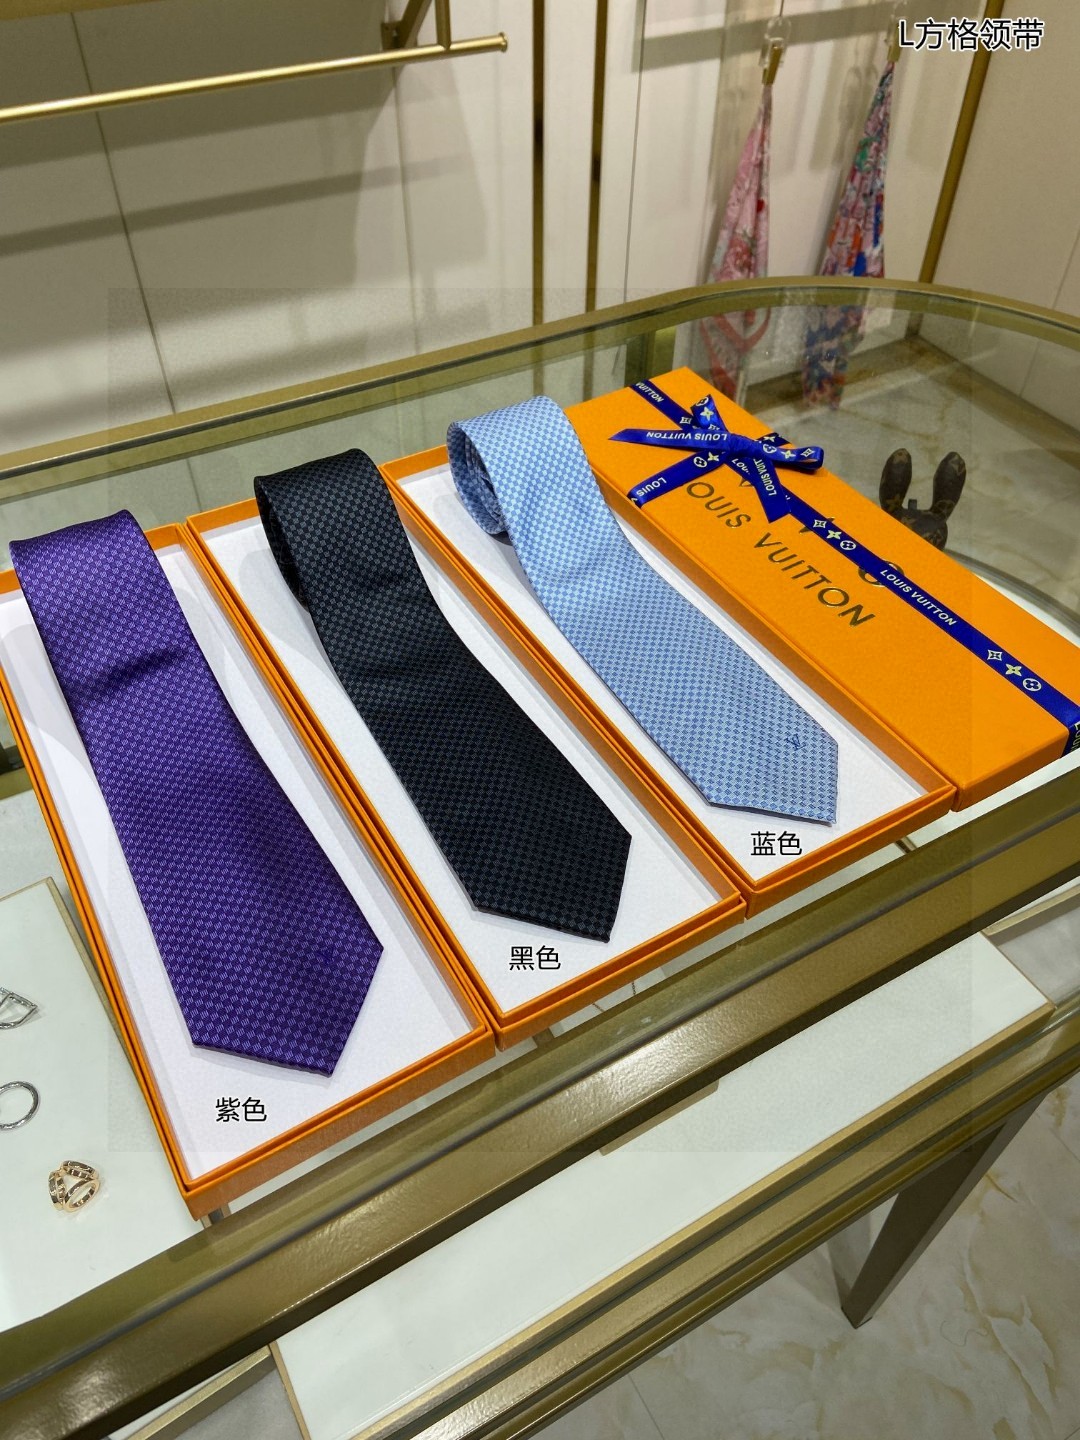 专柜同步特价男士领带系列L方格领带稀有展现精湛手工与时尚优雅的理想选择这款领带将标志性的Damier图案